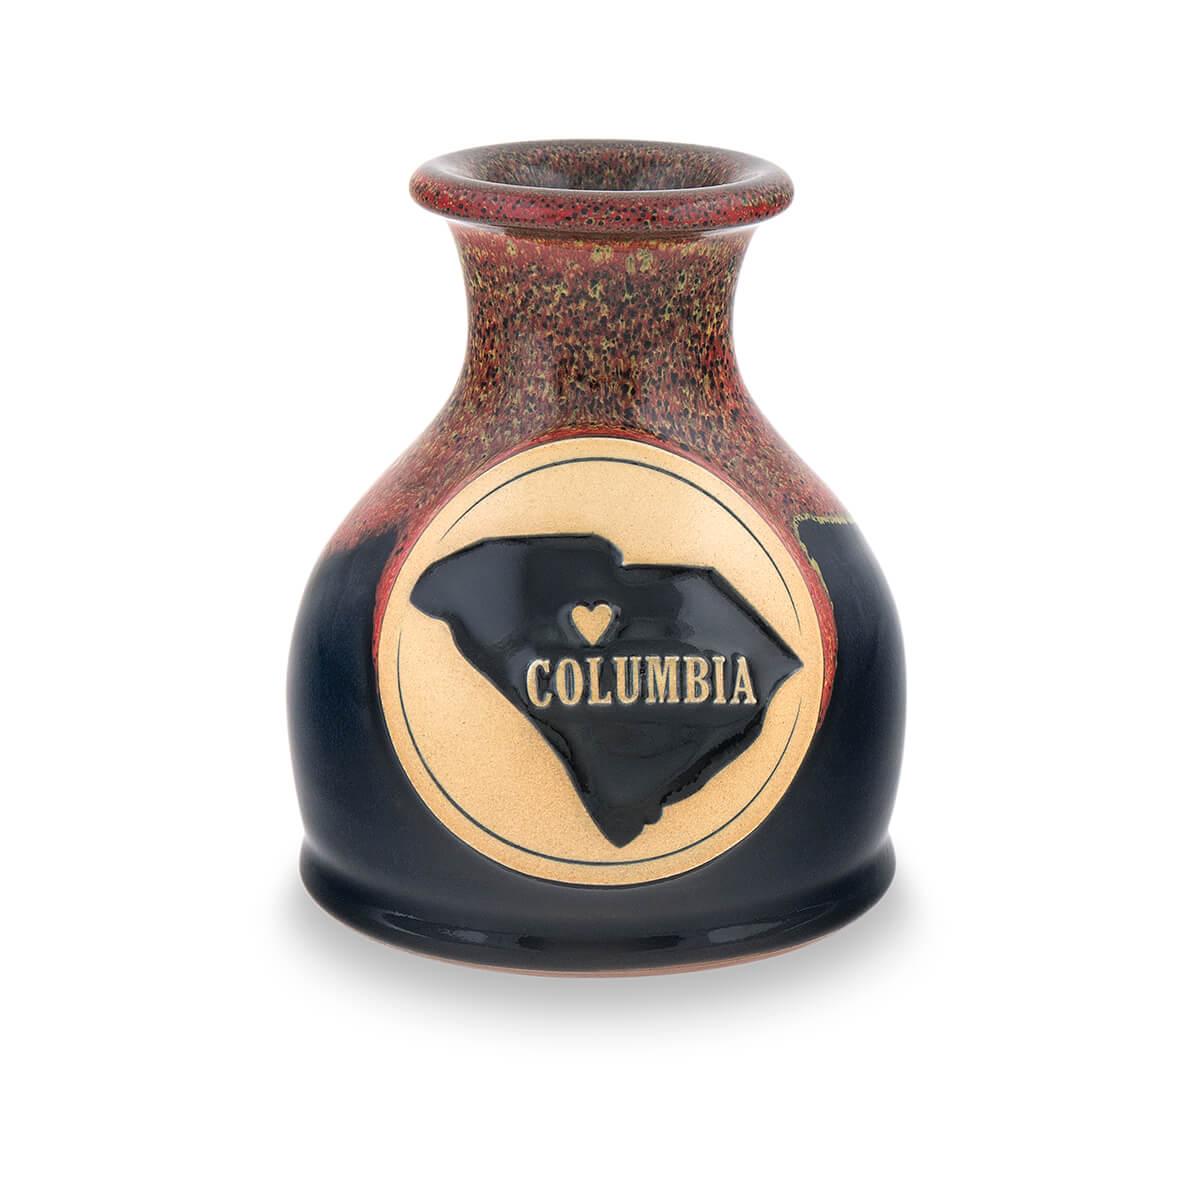  Columbia Bud Vase